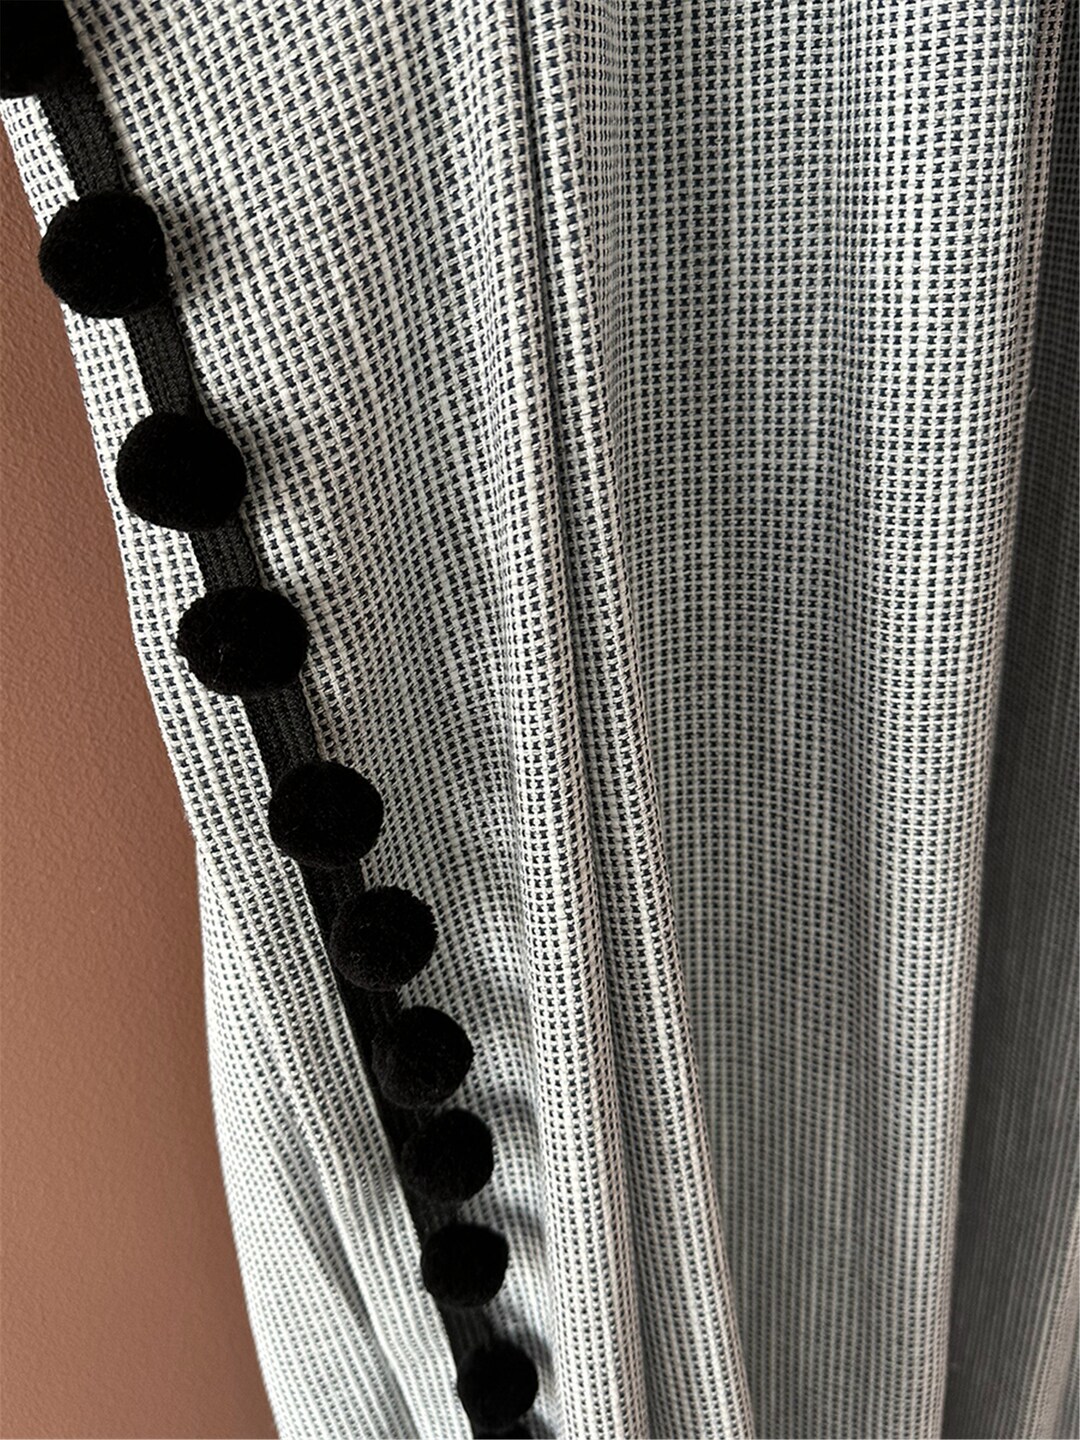 French Retro Black and White Cotton Linen Curtains, Creative Unique ...